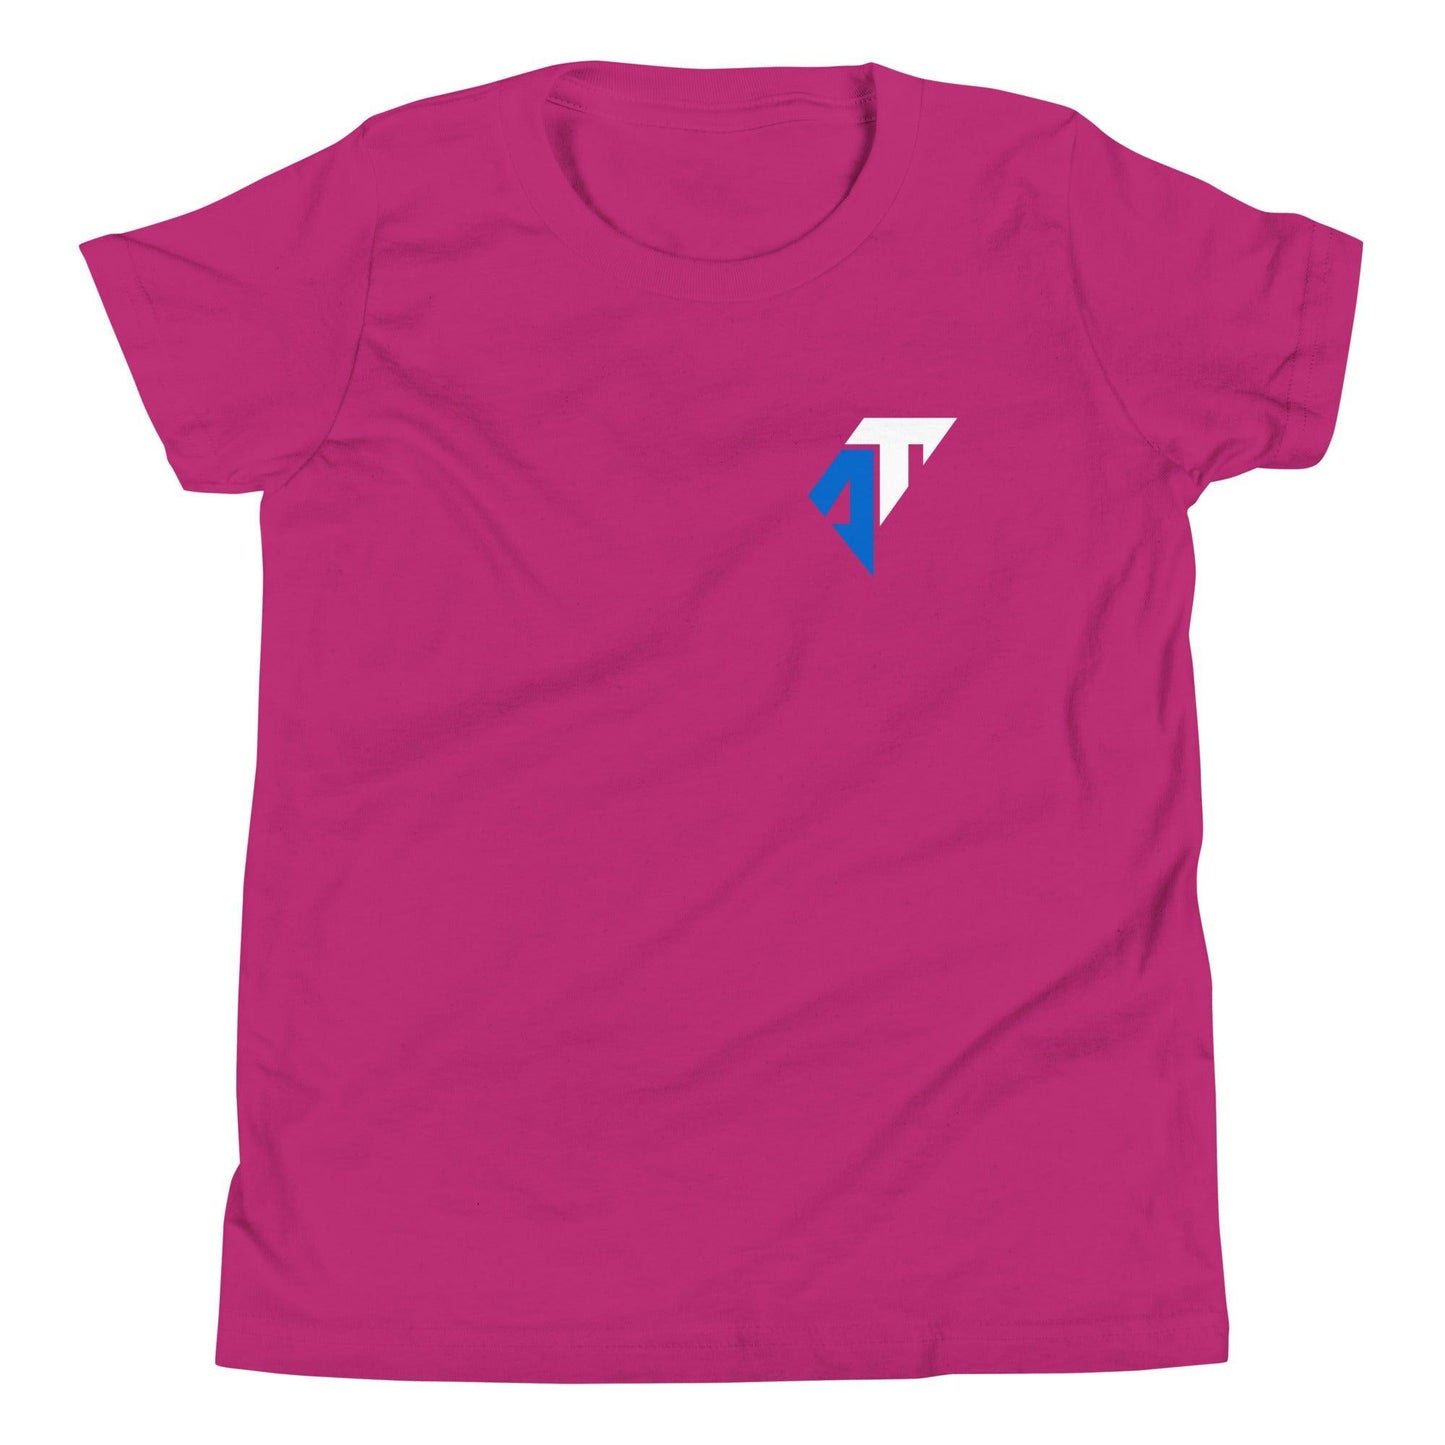 AJ Toney "Essential" Youth T-Shirt - Fan Arch